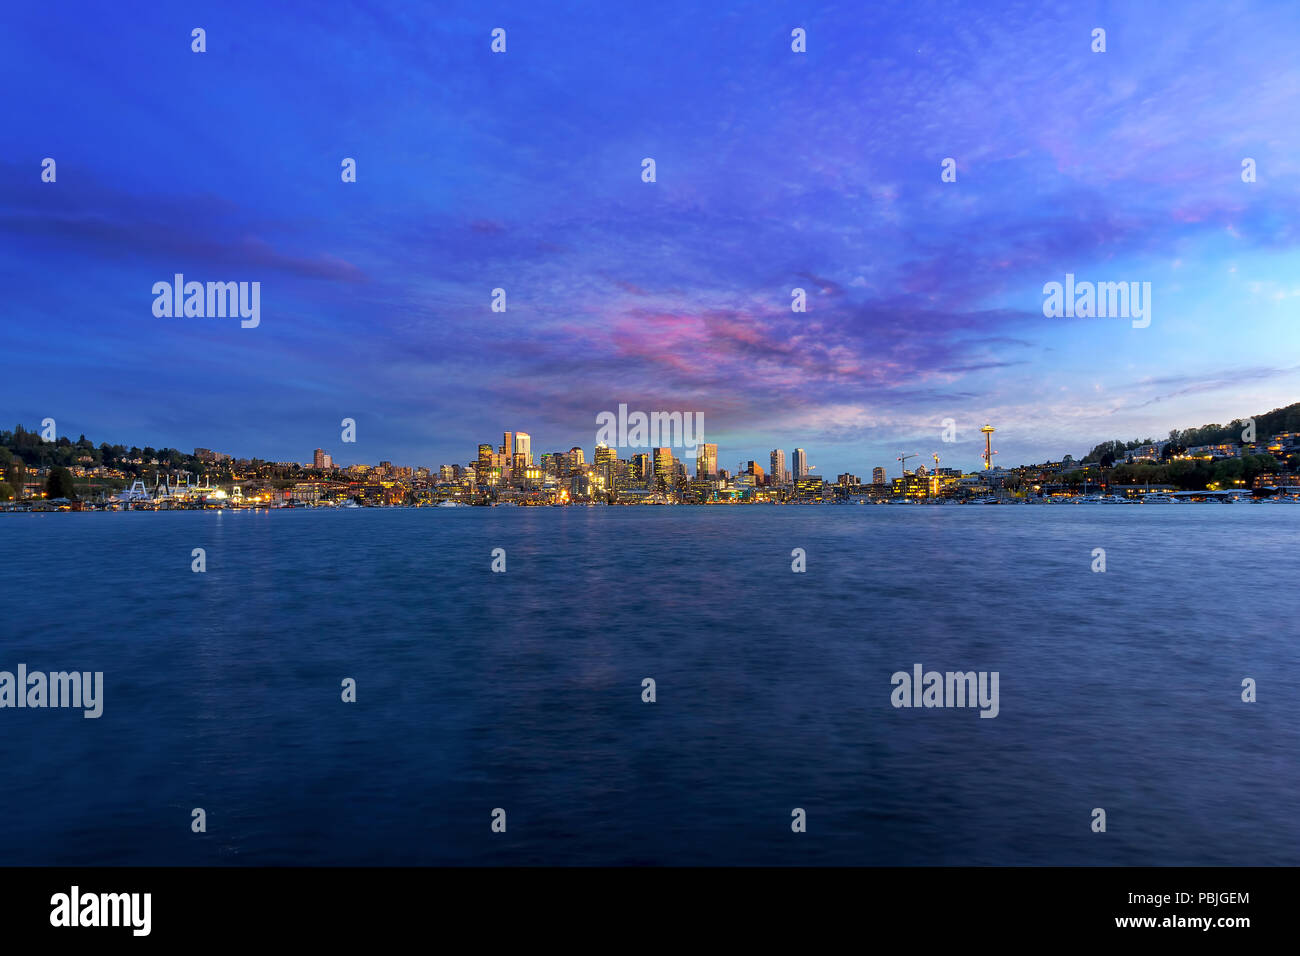 Seattle Washington city skyline along Lake Union during sunset Stock Photo